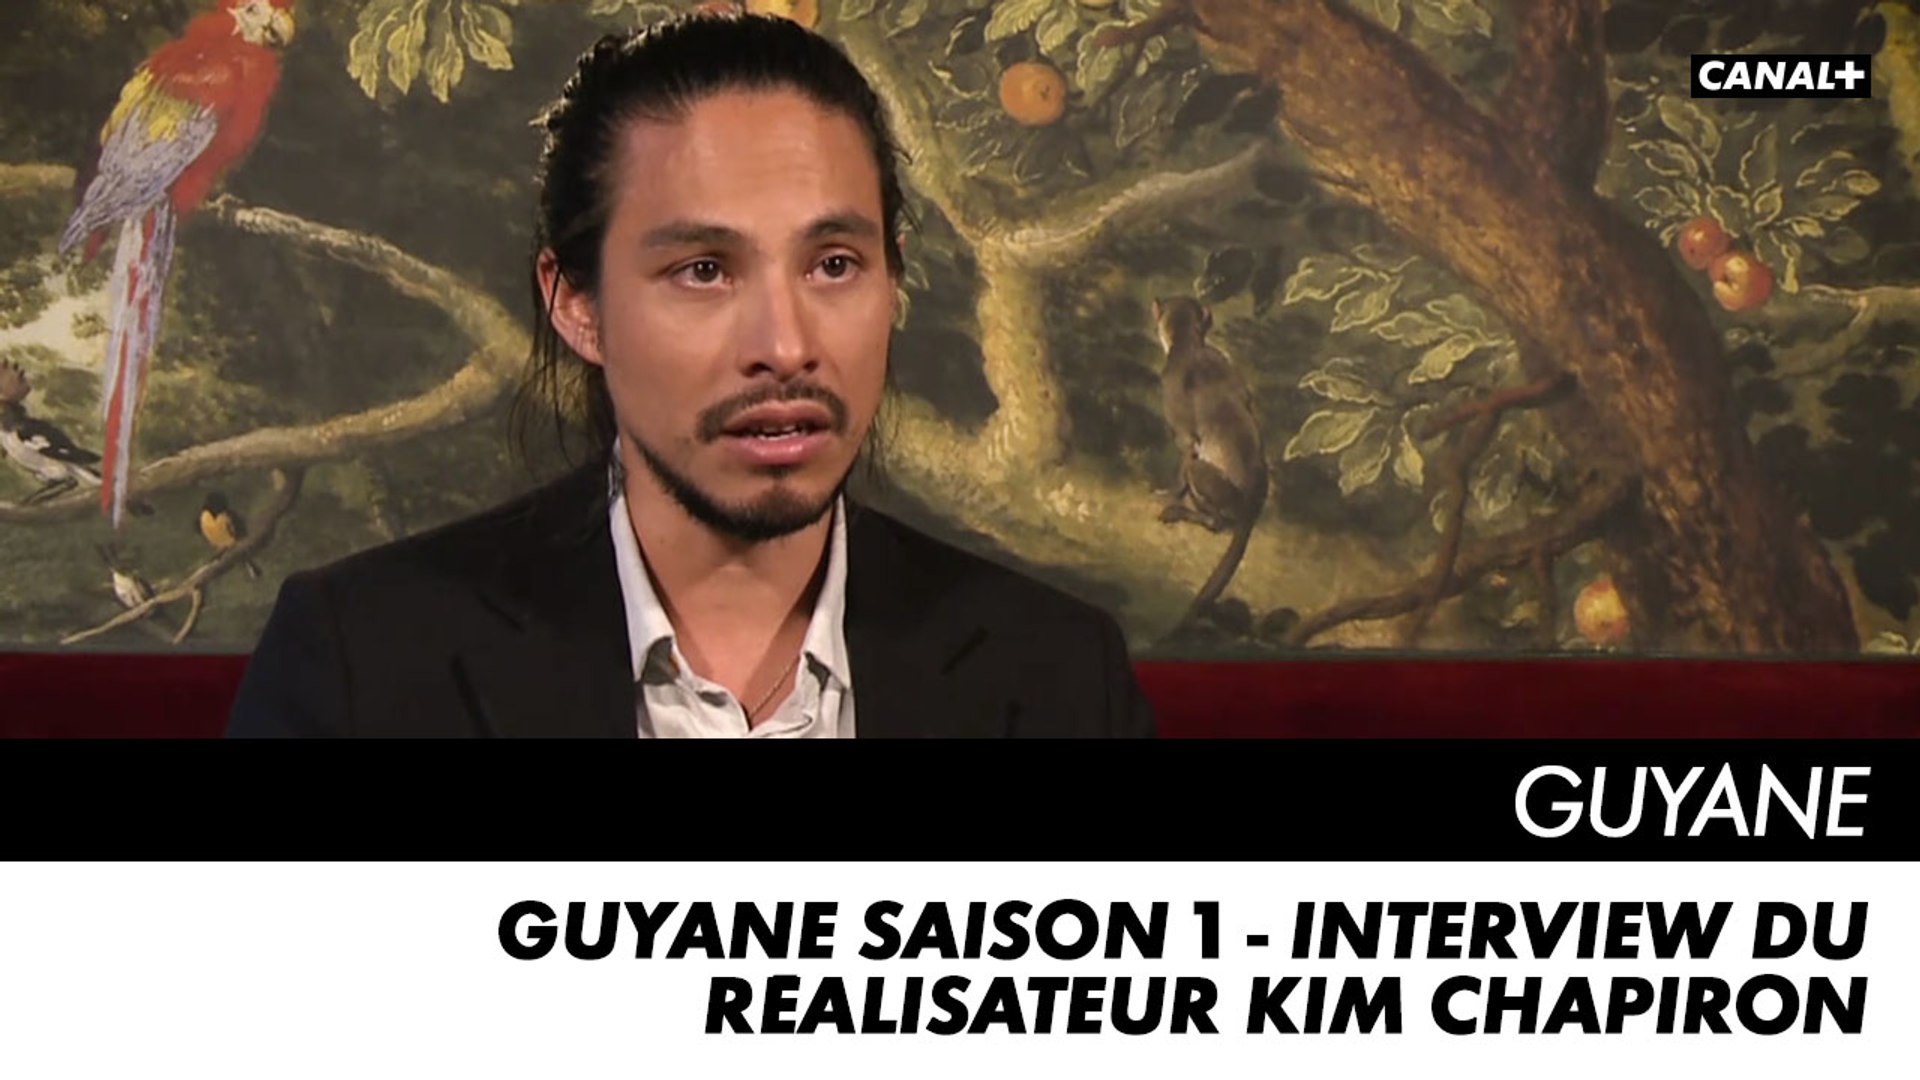 GUYANE saison 1 - Interview du réalisateur Kim Chapiron - Vidéo Dailymotion